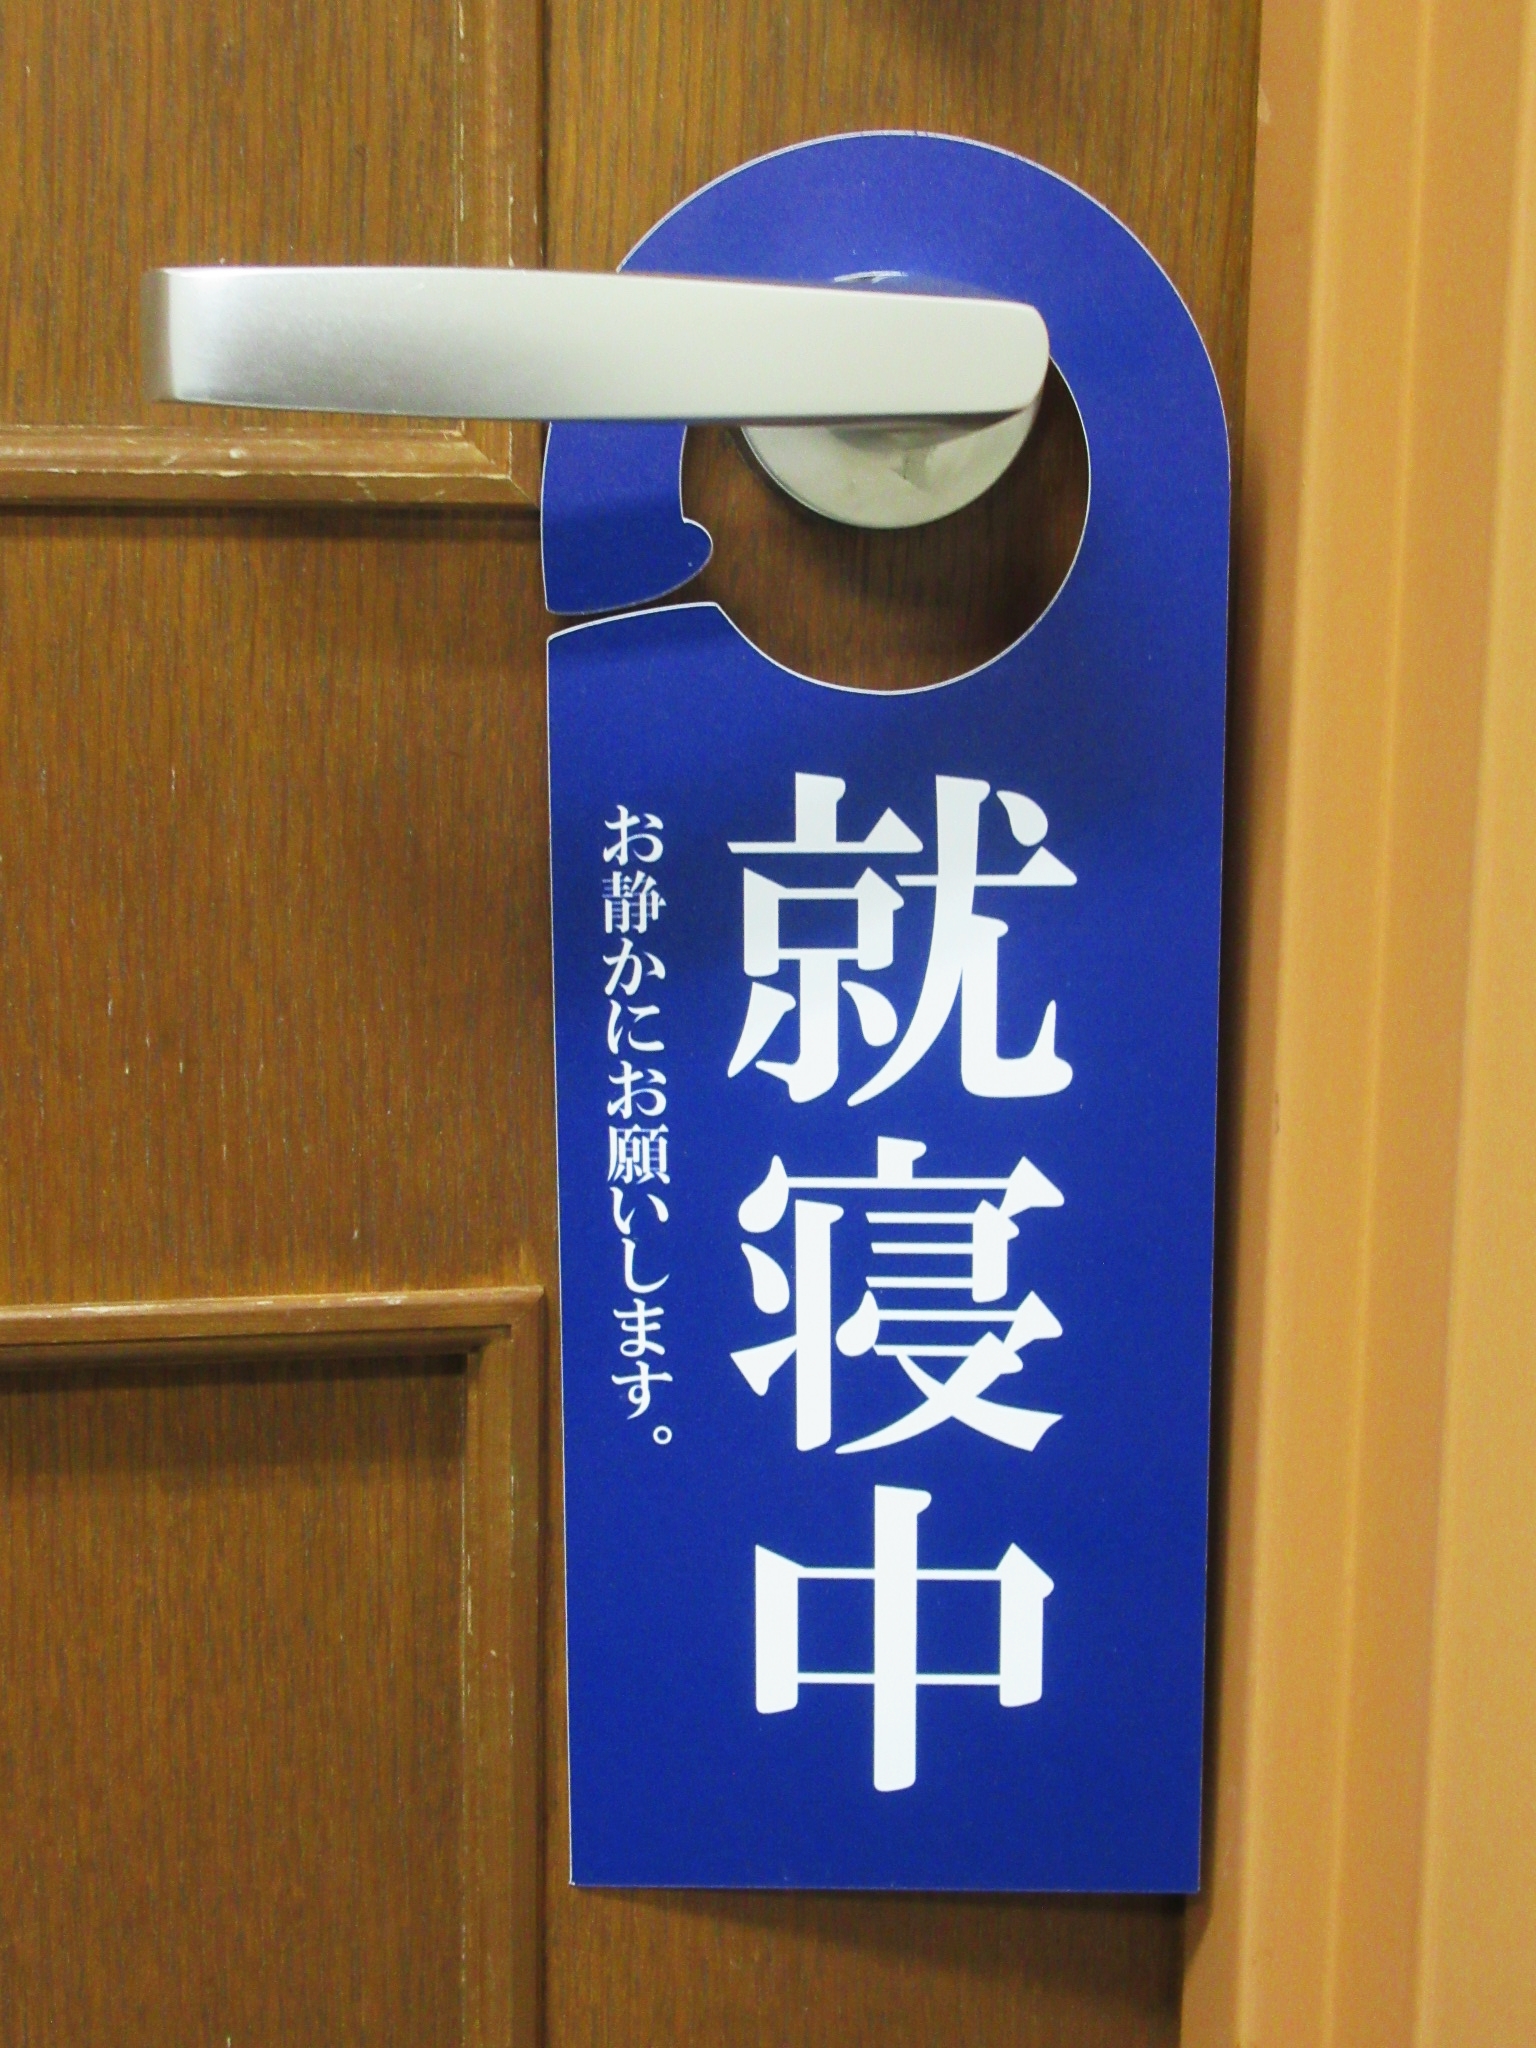 .. средний . тихий краб синий цвет ручка двери автограф plate ... табличка . отель покупатель . путеводитель ручка двери plate дверь автограф plate дверь крюк сделано в Японии 